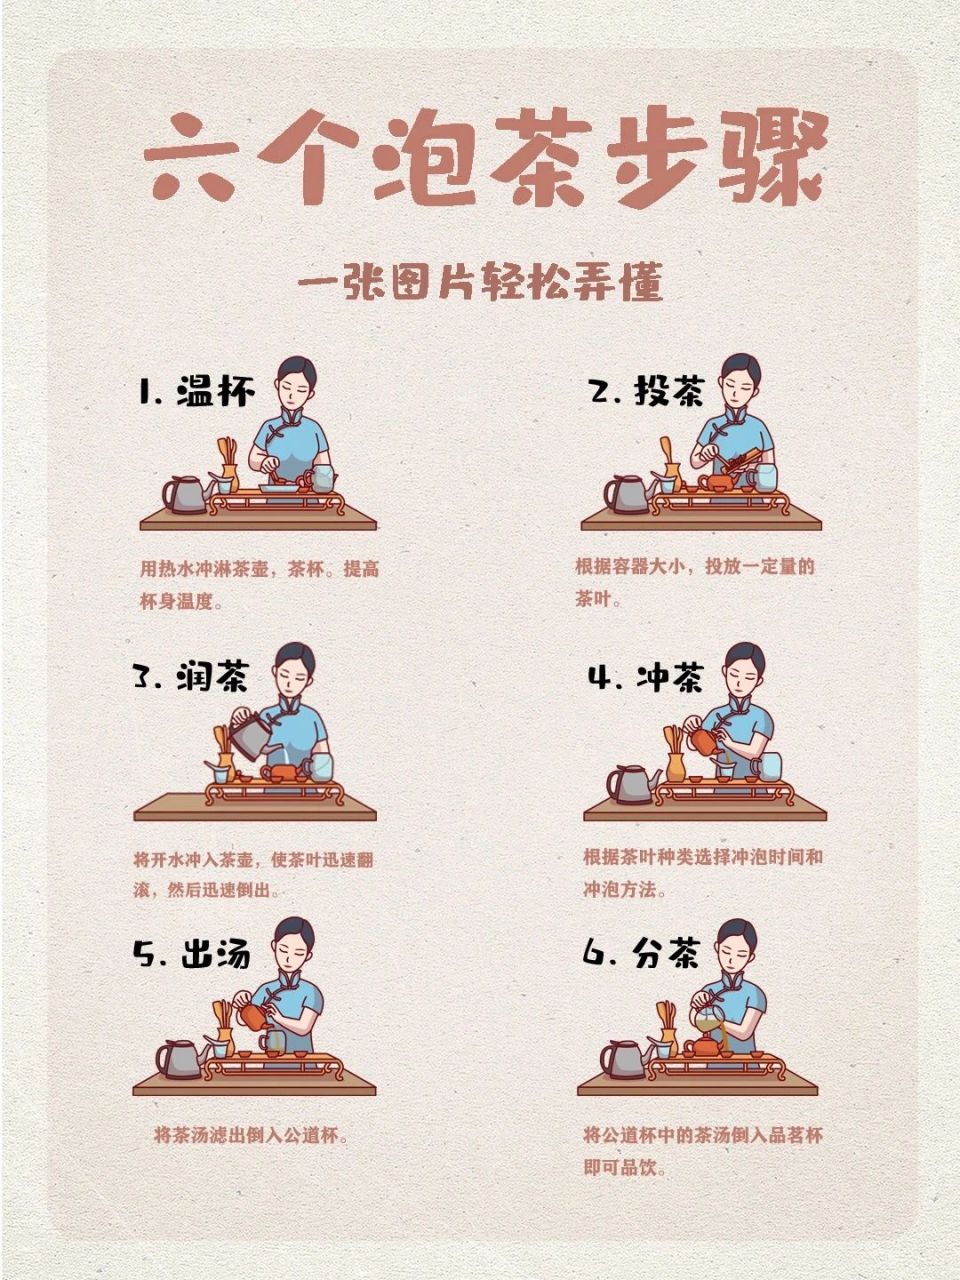 煮茶的十三个步骤图解图片